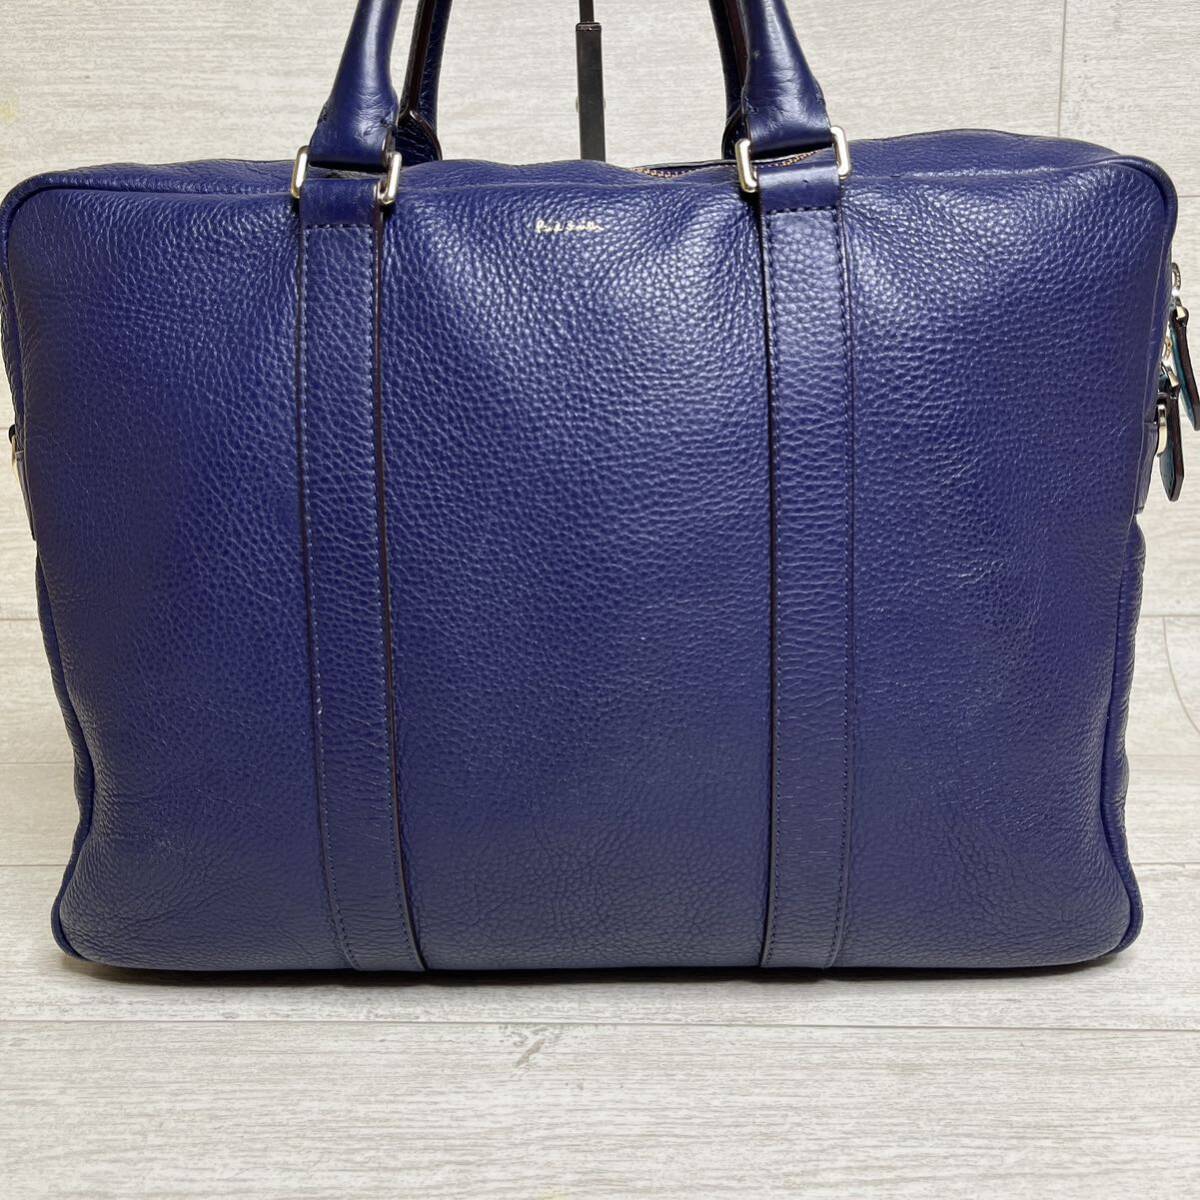 1 иен [ трудно найти ] Paul Smith PaulSmith портфель портфель большая сумка 2WAY голубой кожа мужской женский синий 